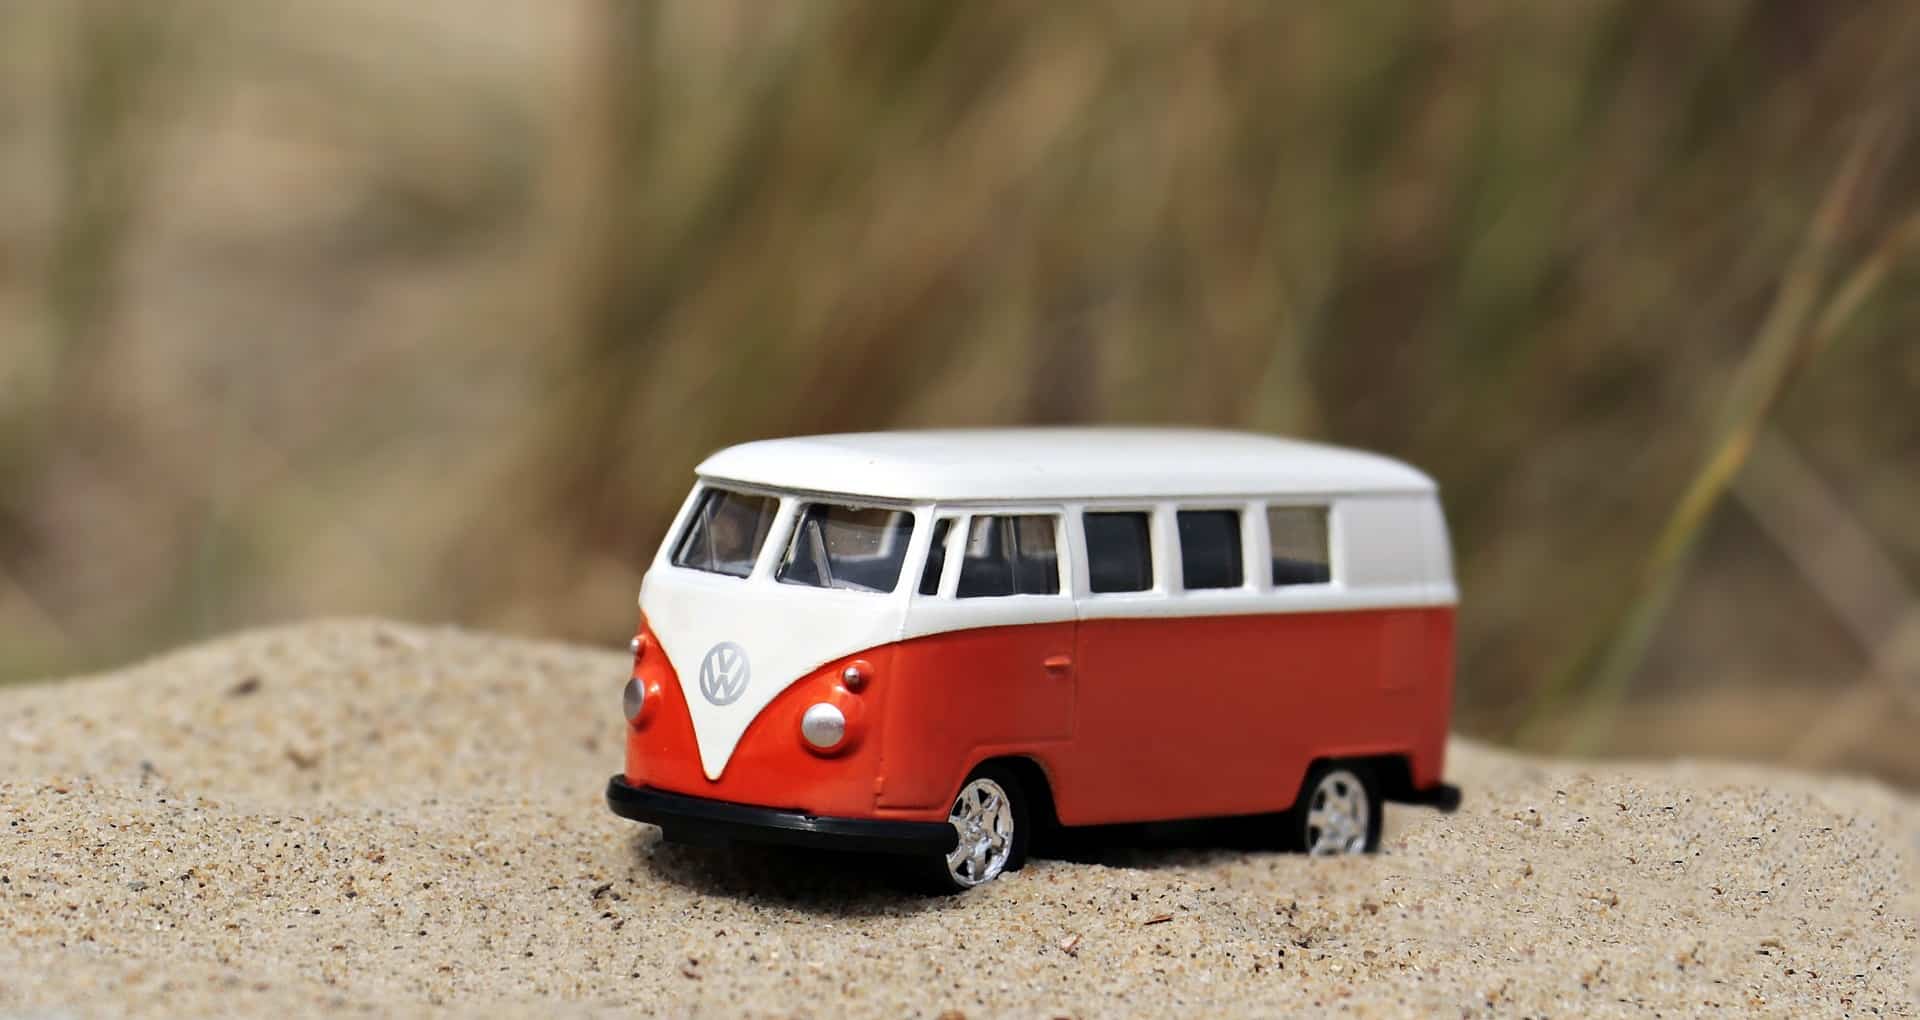 Un jouet représentant un autocar de la marque Wolswagen orange et blanc, est posé sur du sable.